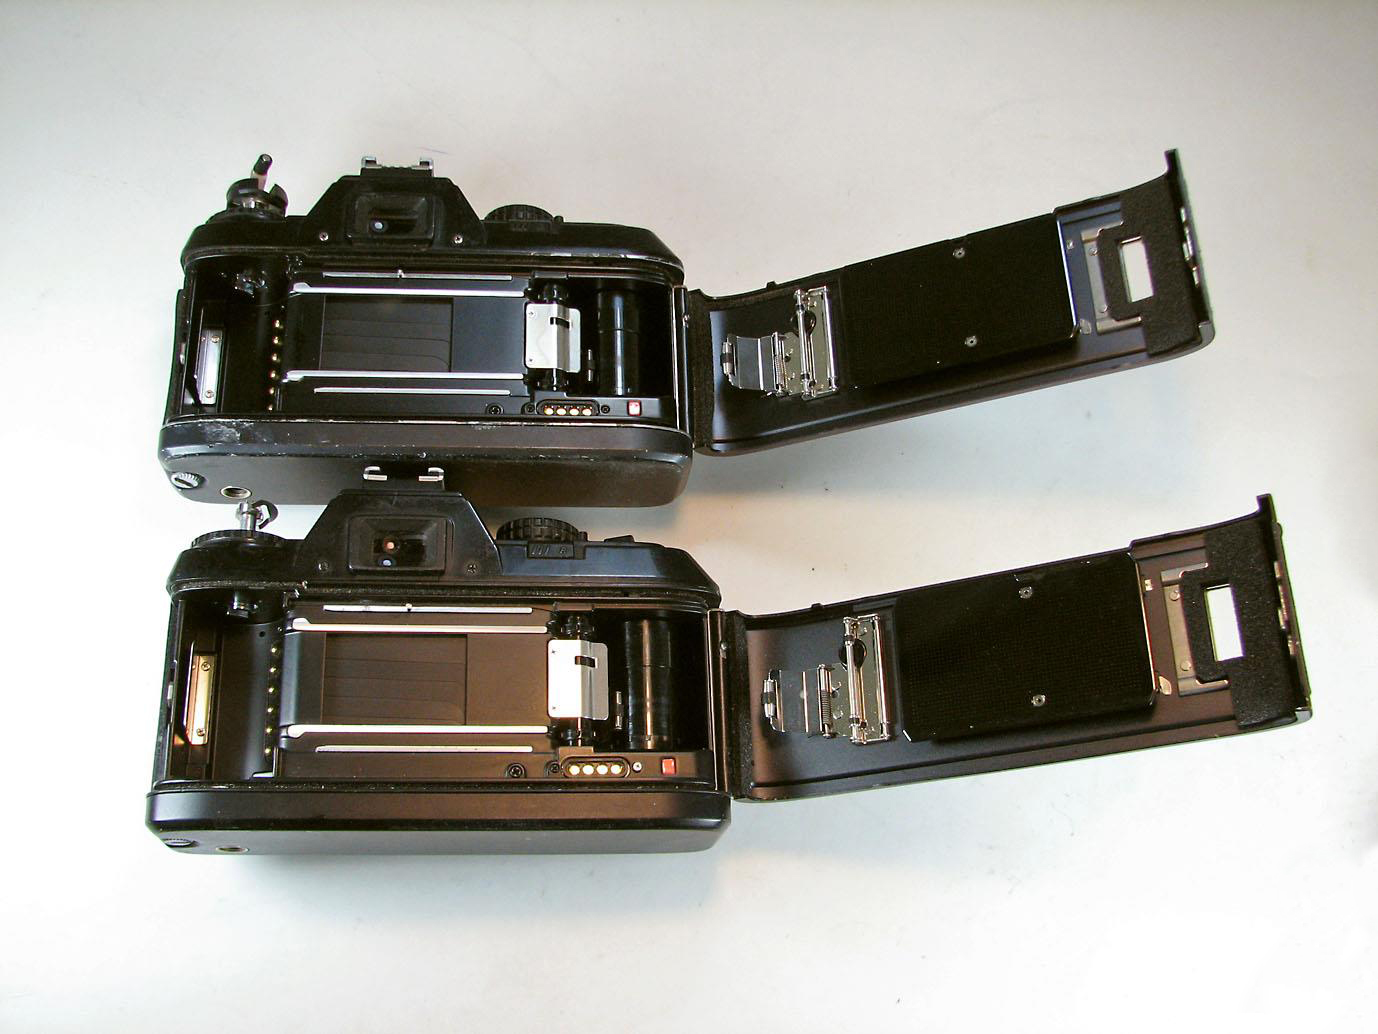 2 بدنه دوربین Nikon نیکون F-501 و F-301